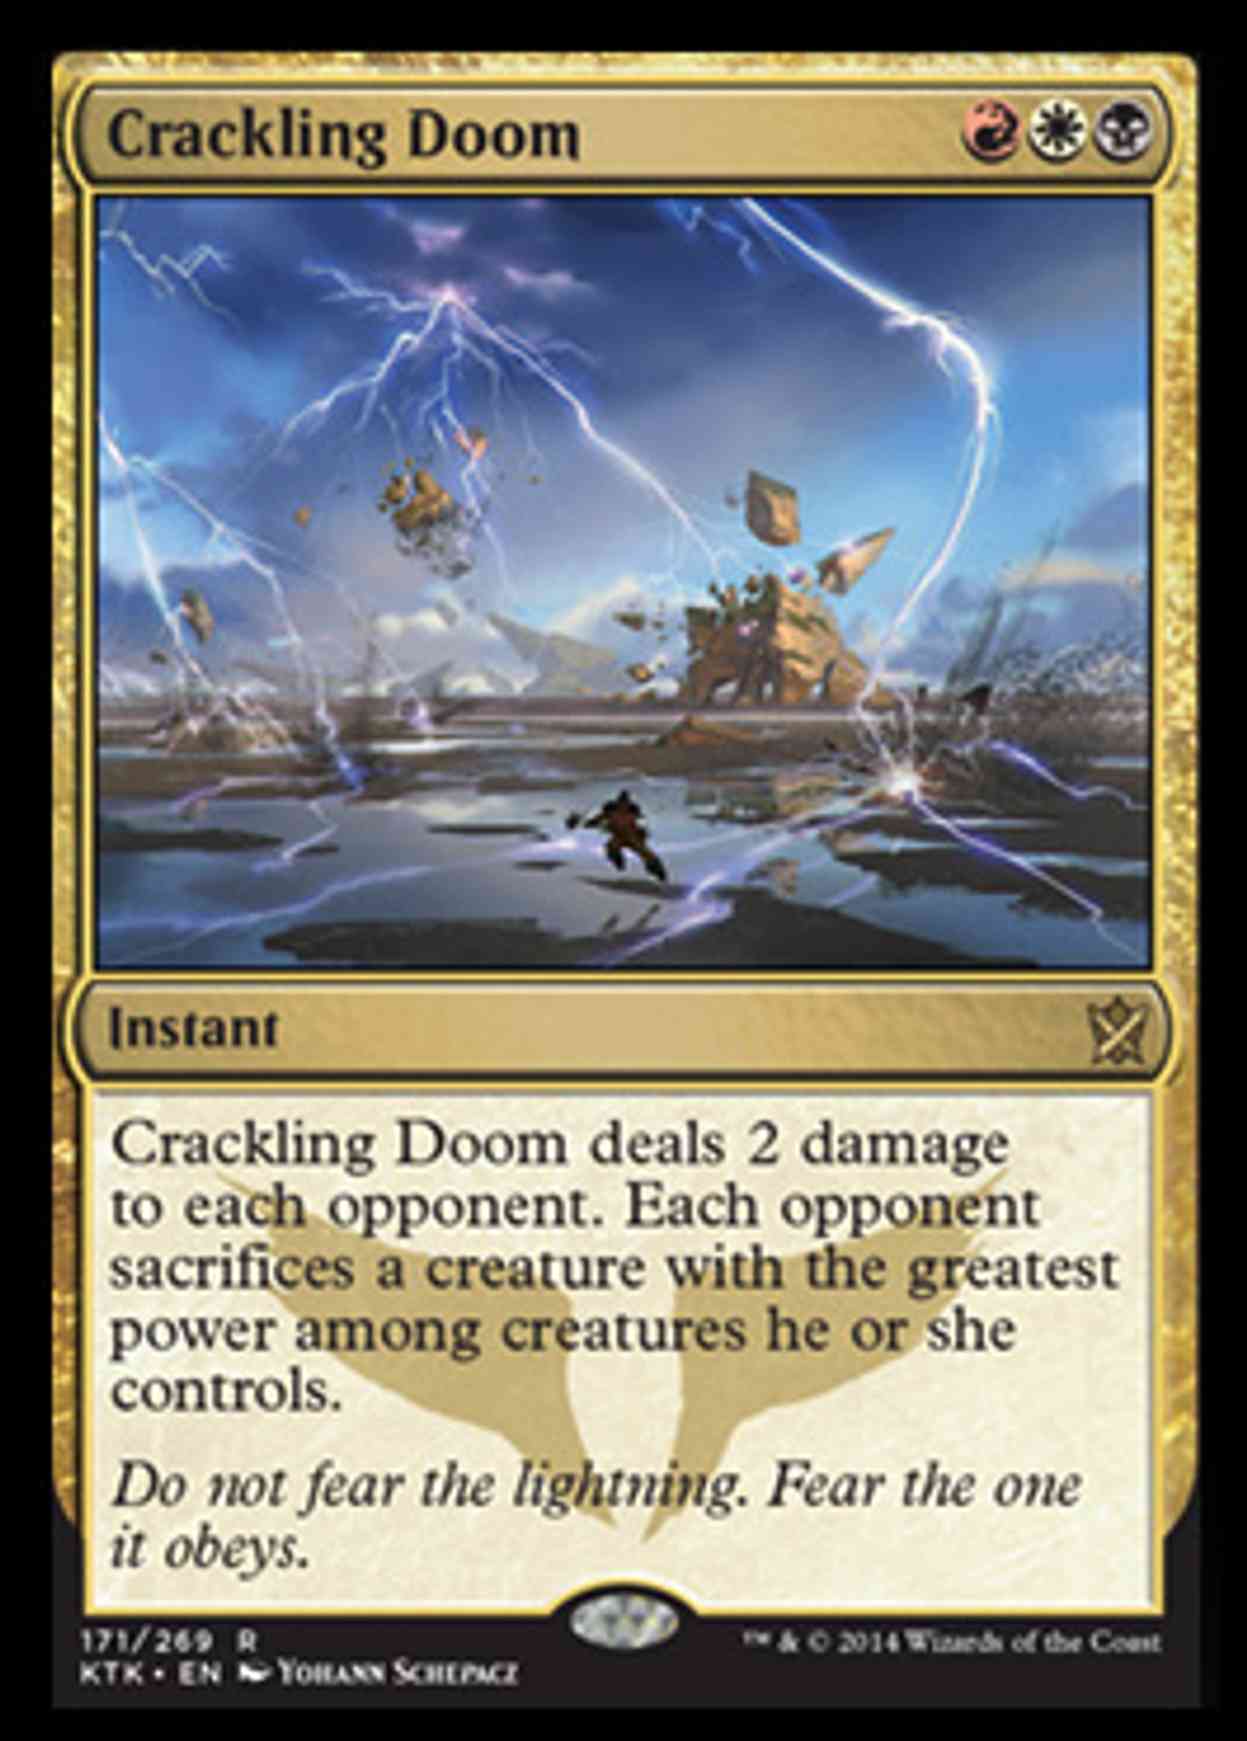 Crackling Doom magic card front